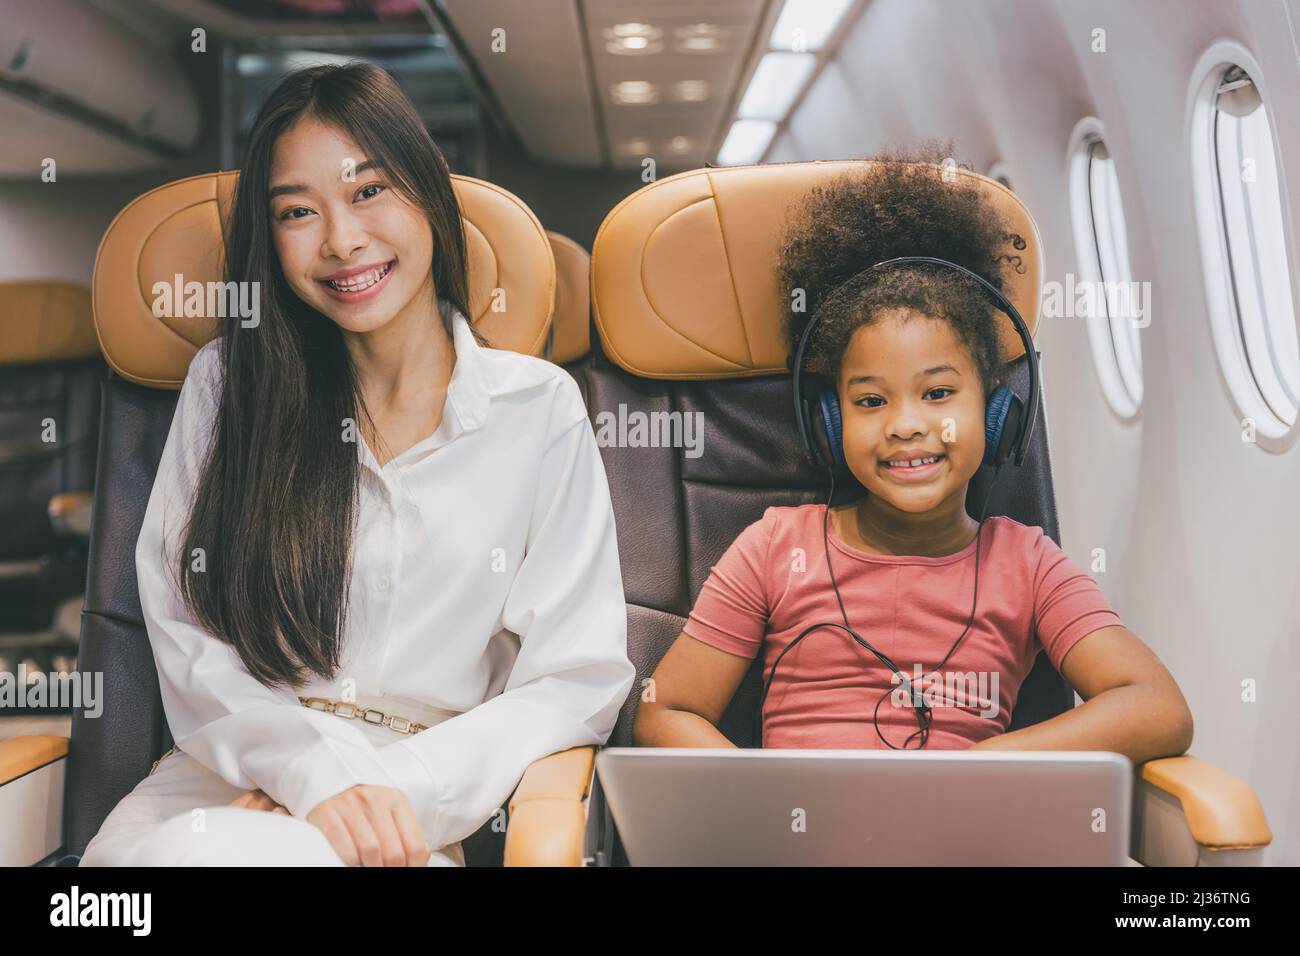 Schwester mit Kindern glückliches Lächeln im Flug Passagierkabine glücklich zu reisen Konzept. Stockfoto